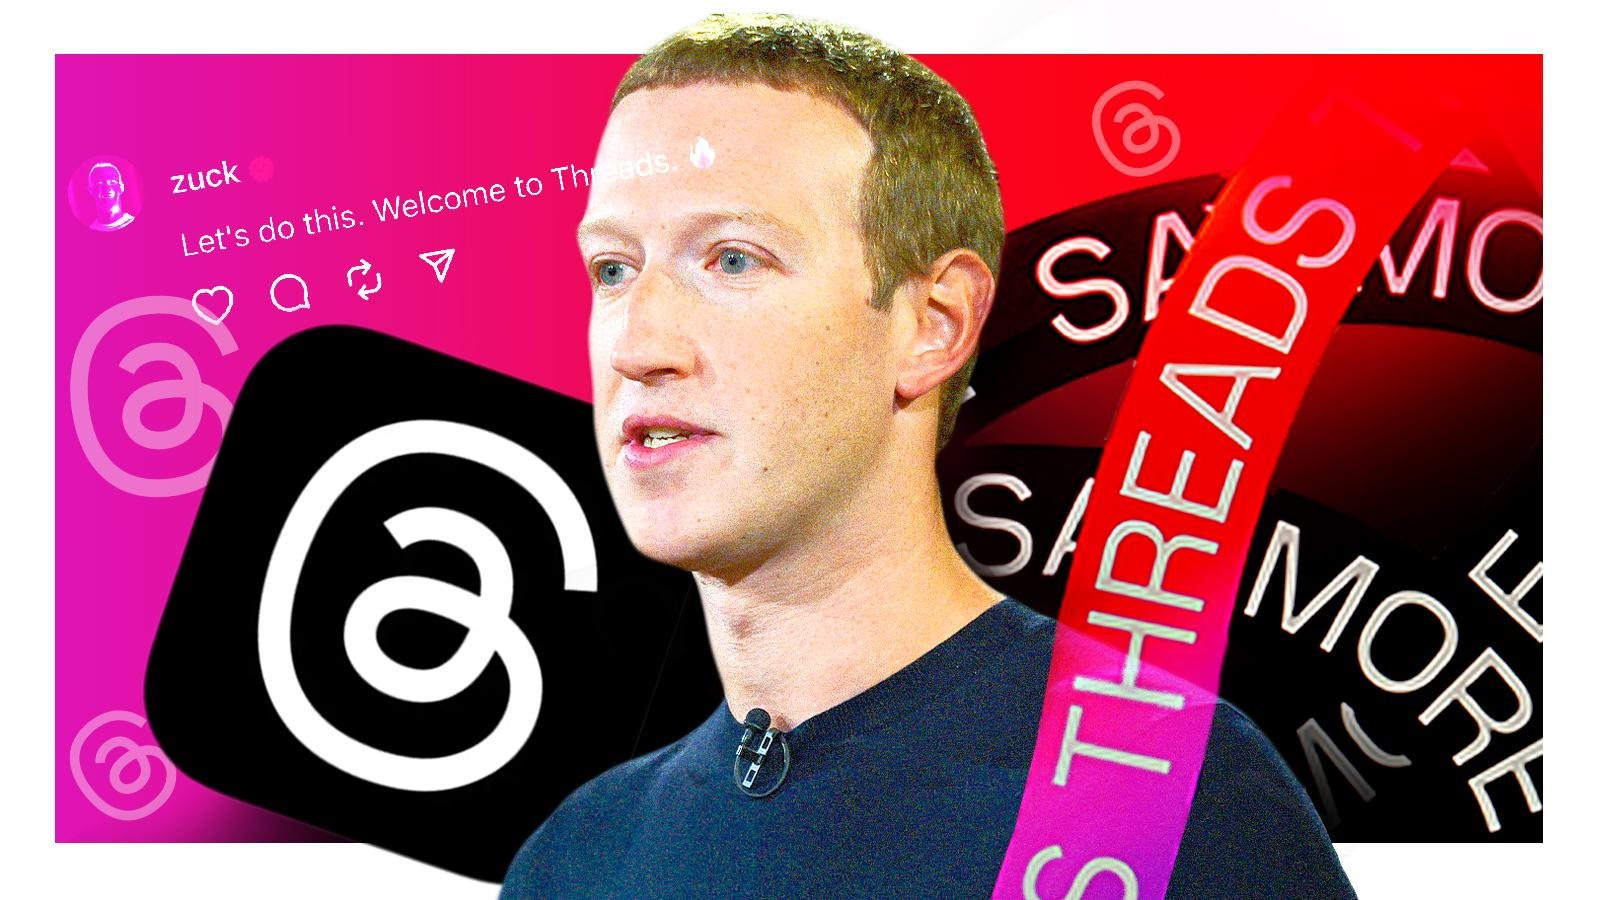 Canh bạc mới của Mark Zuckerberg, chuyển từ giấc mơ ‘vũ trụ ảo’ sang ‘Fediverse’ - Ảnh 2.